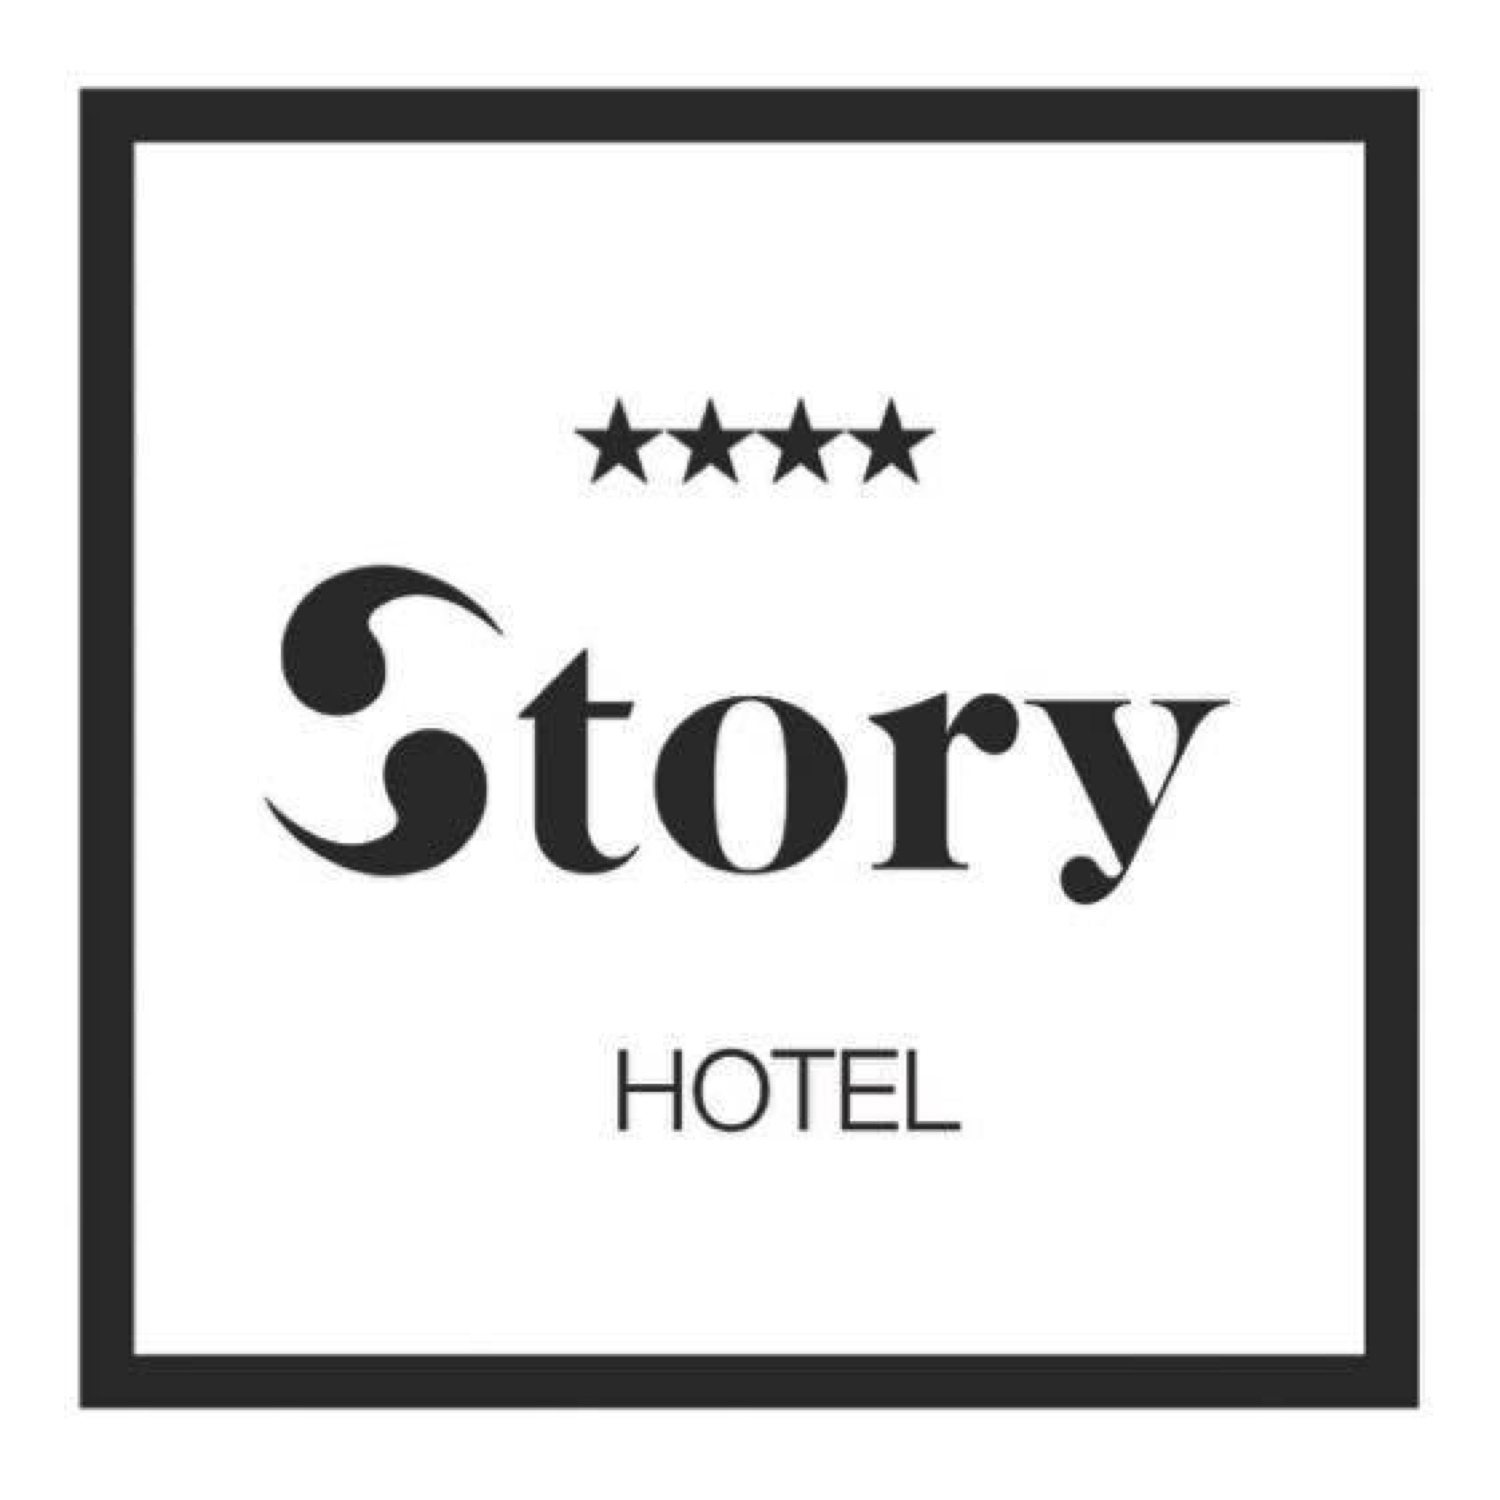 Hotel Story - Sarajevo, Bosnia and Herzegovina